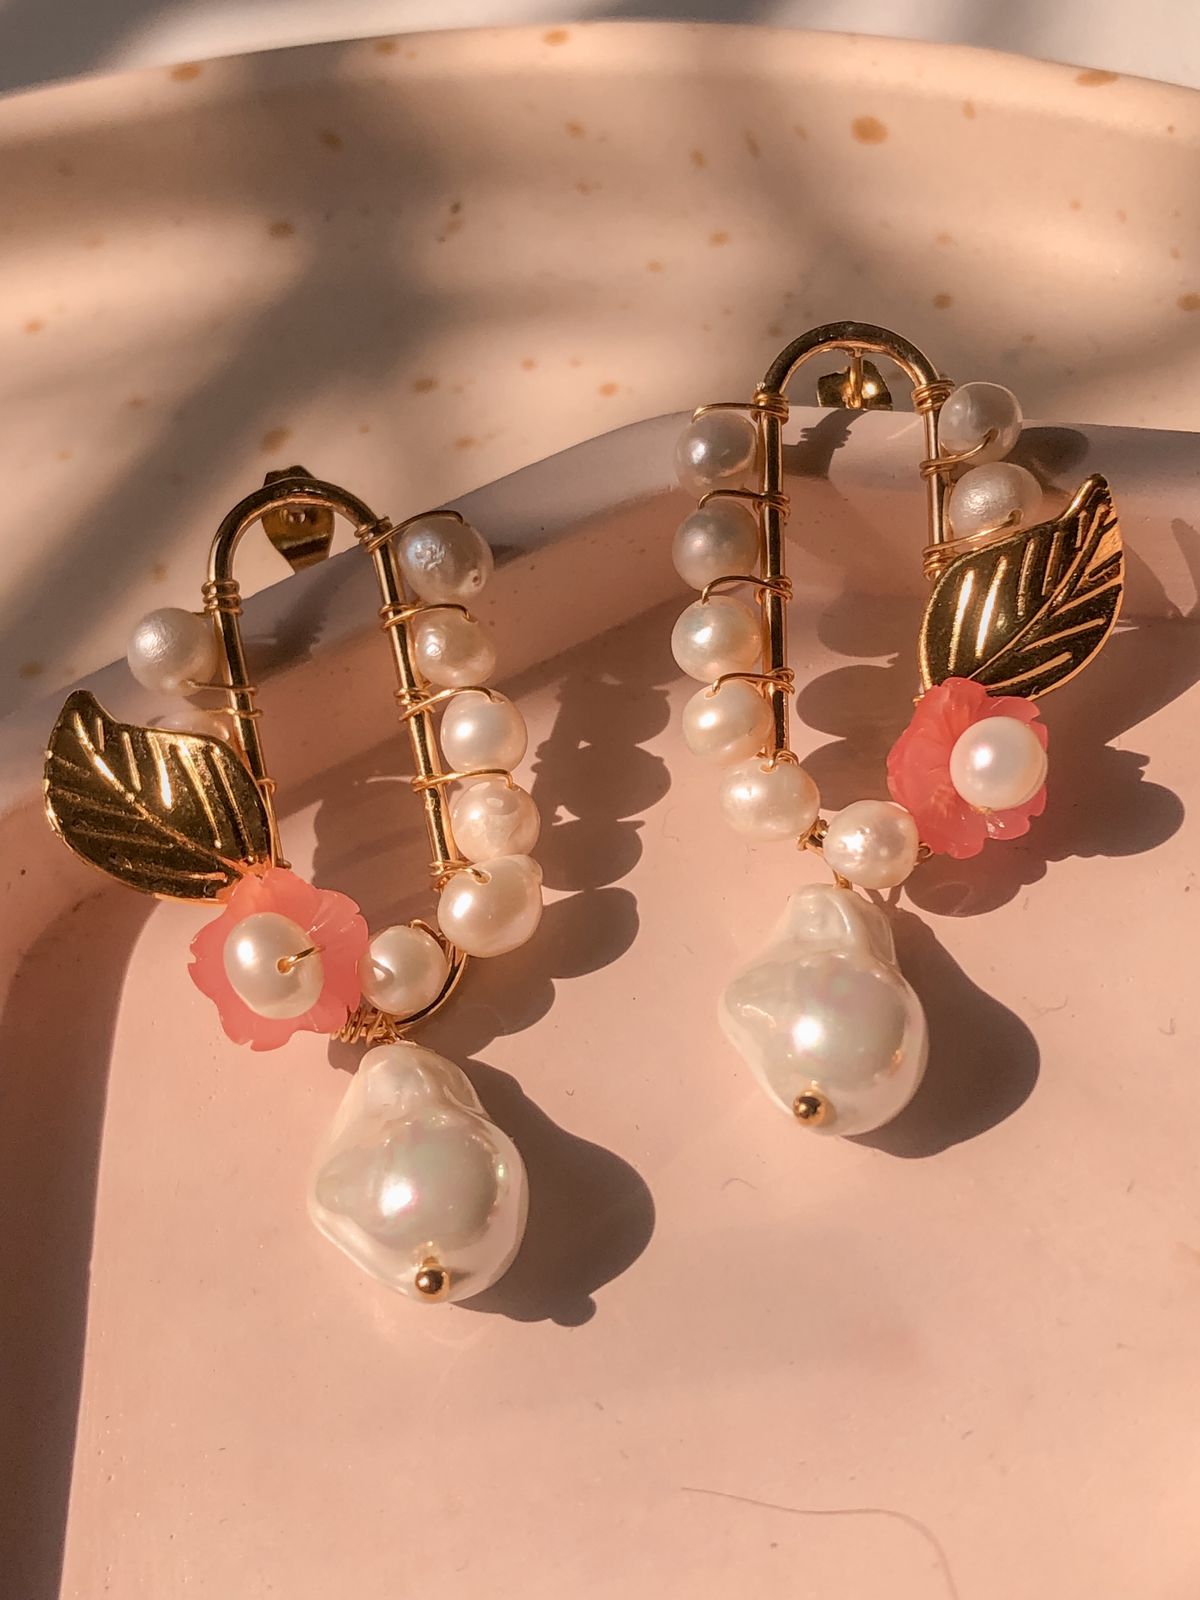 Oval pink earrings